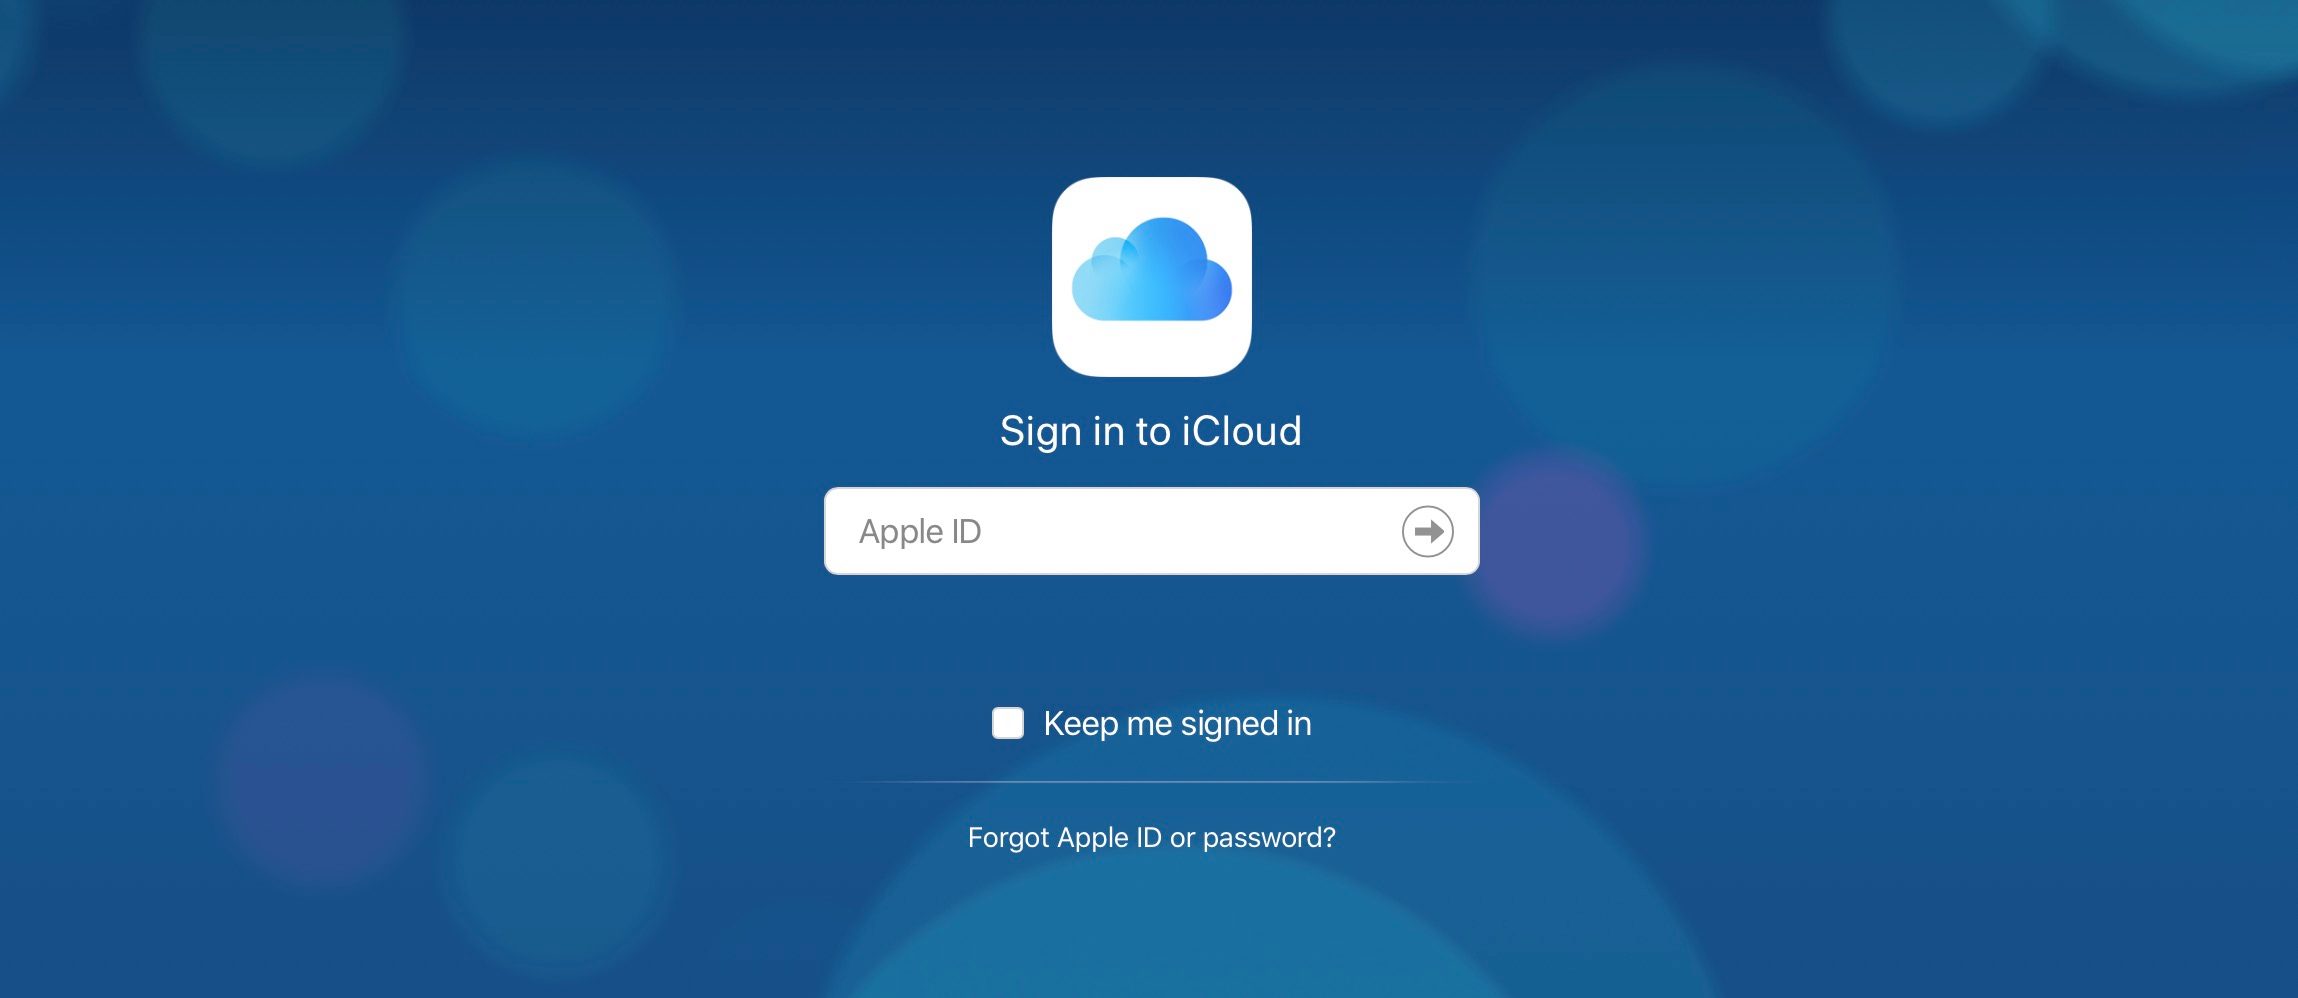 iCloud cloud-first